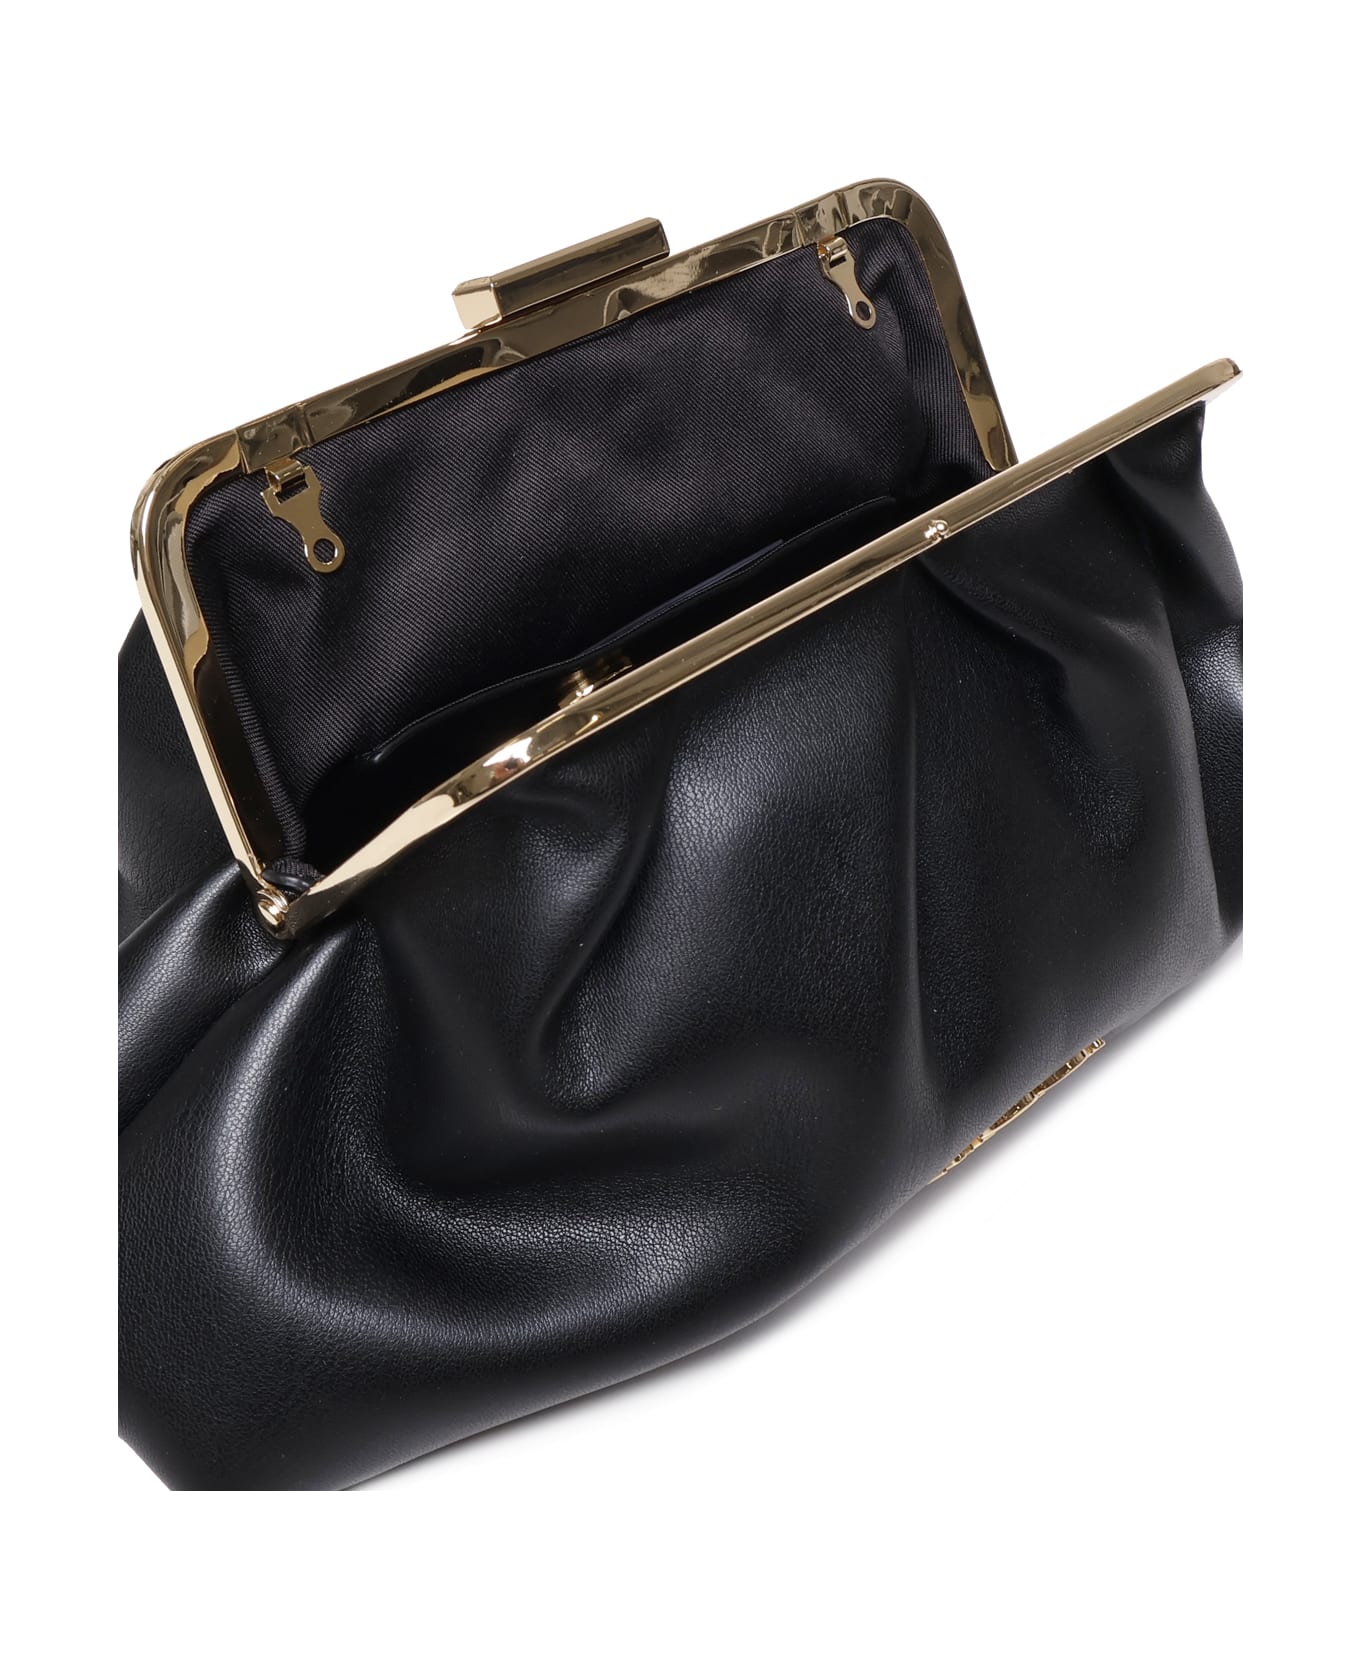 Love Moschino Shoulder Bag With Logo Plaque - Black